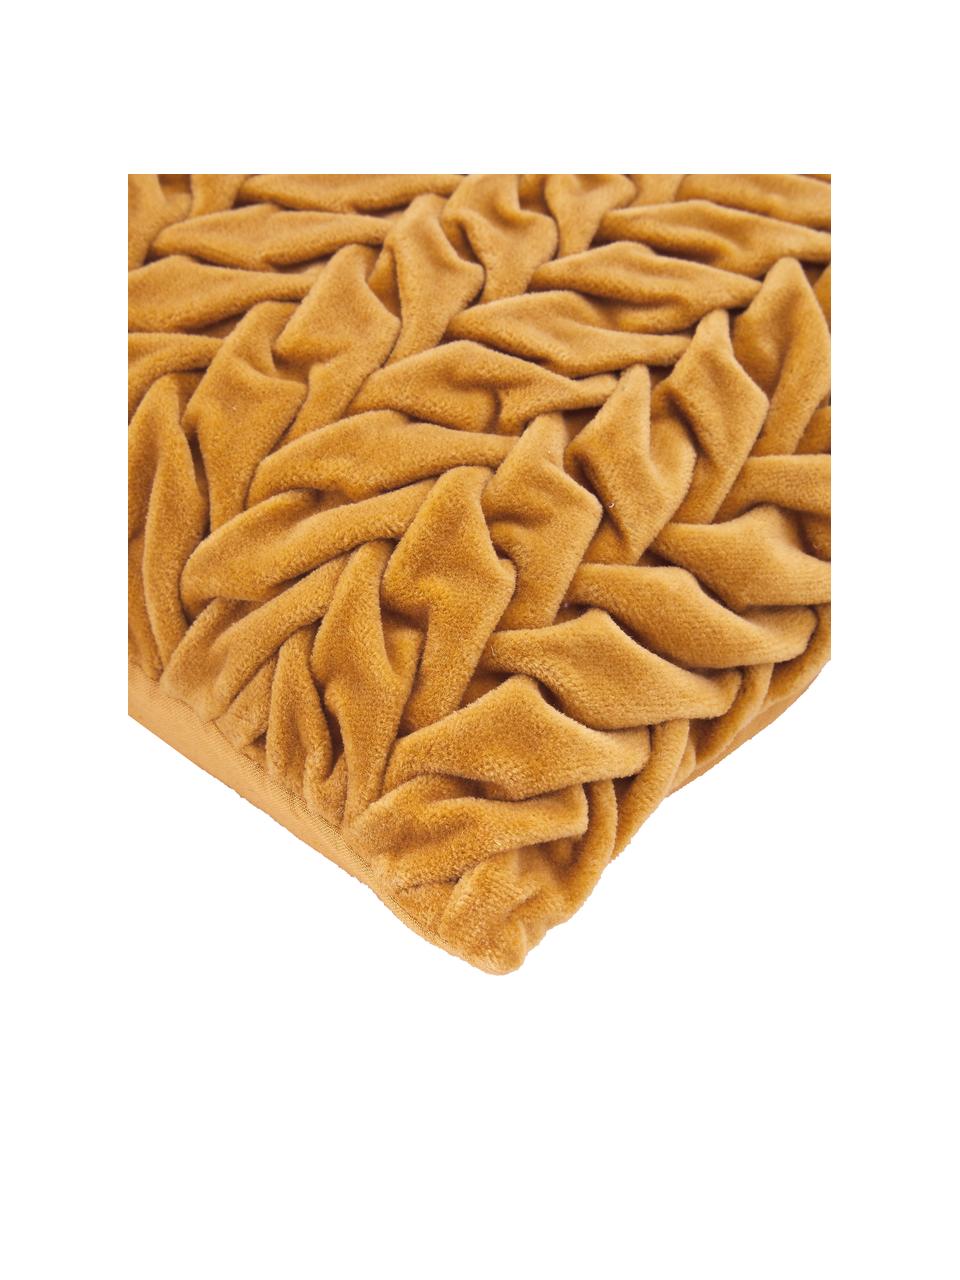 Samt-Kissen Smock in Senfgelb mit geraffter Oberfläche, mit Inlett, Bezug: 100% Baumwollsamt, Senfgelb, B 30 x L 50 cm